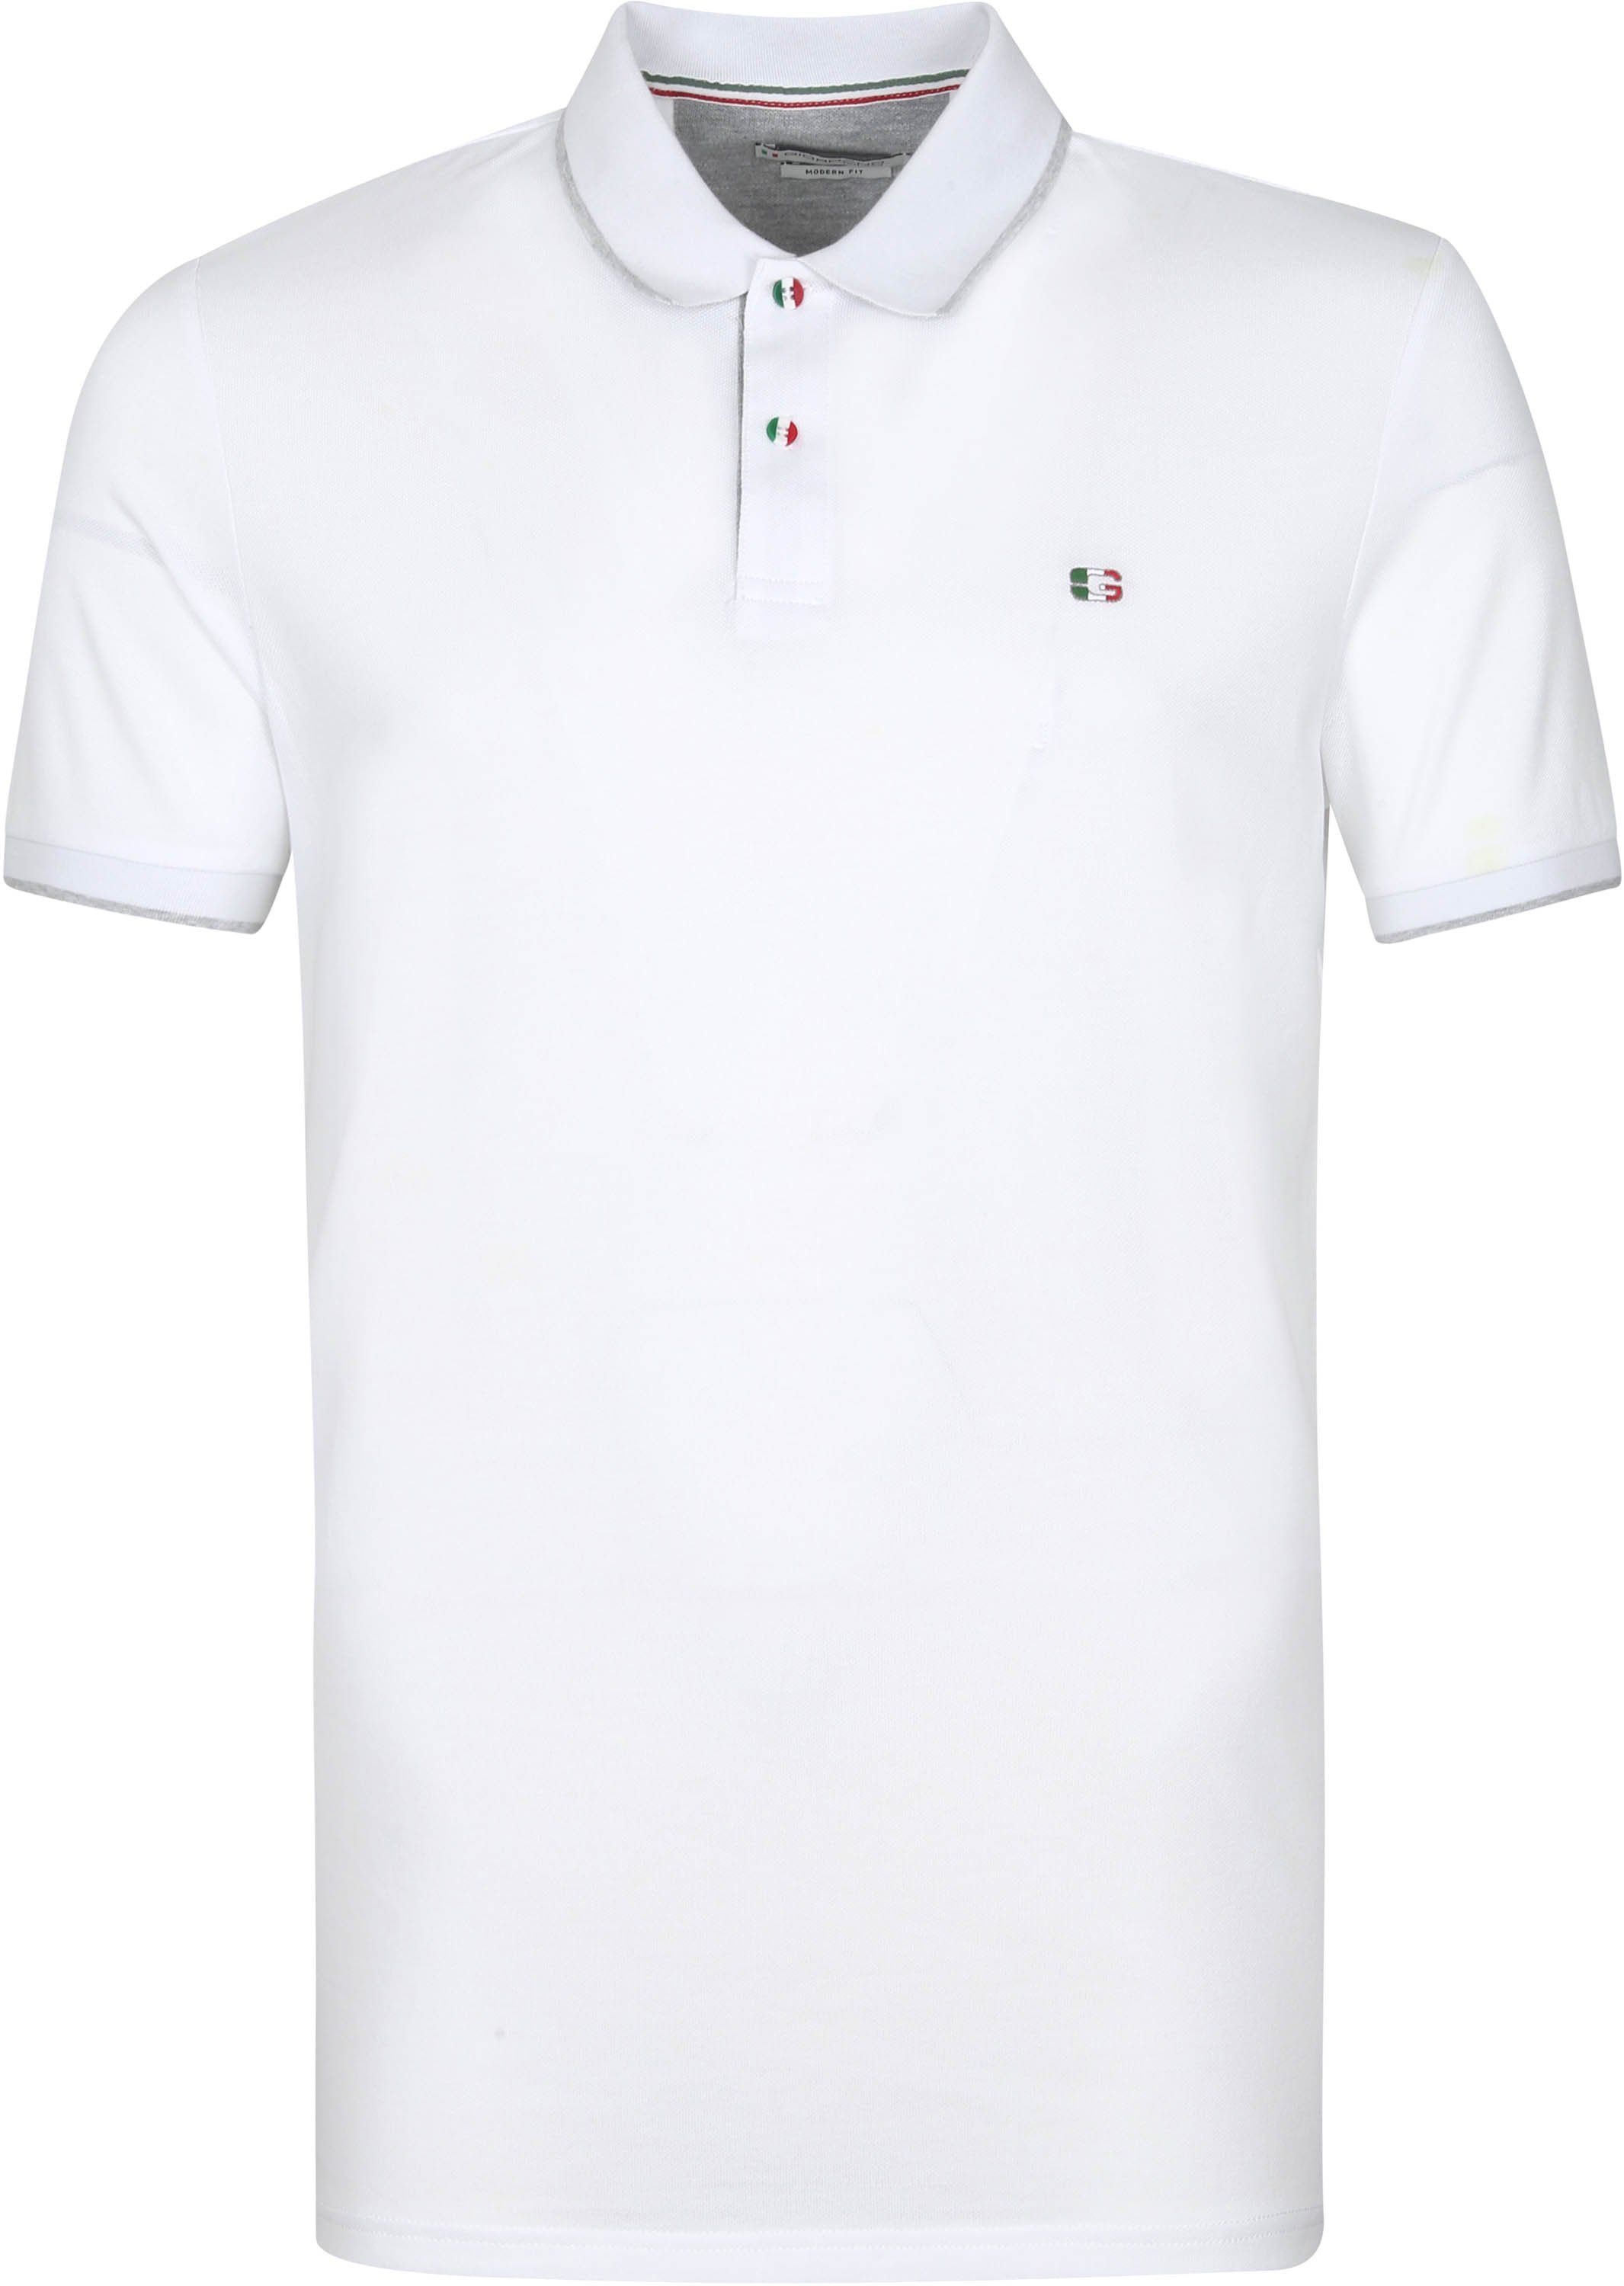 Giordano Polo Shirt Nico White size XL